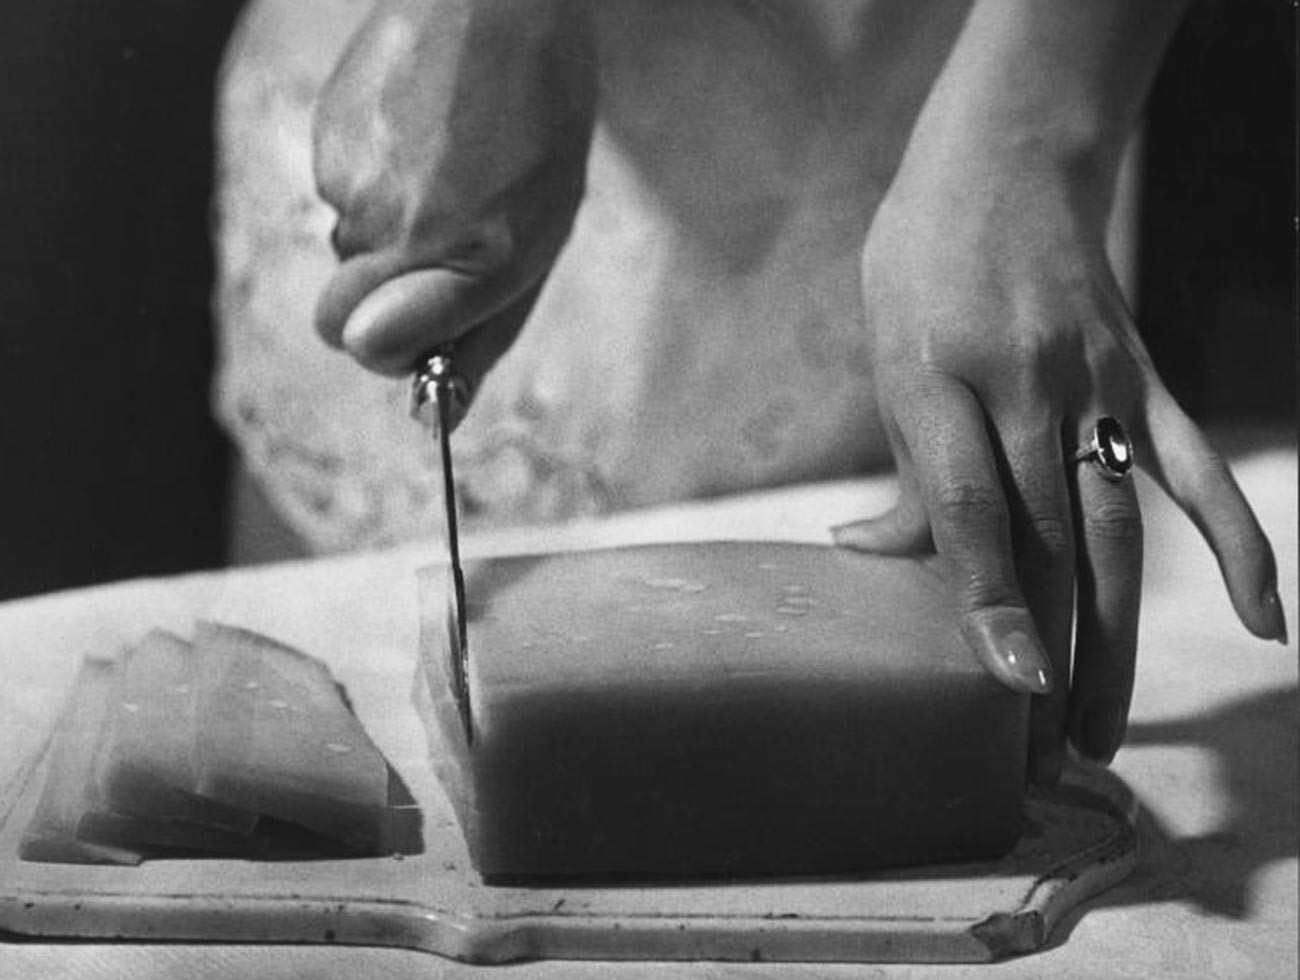 Il est difficile de déterminer précisément ce qui se trouve sous ce couteau : du beurre, du fromage ou encore du lard ? (1957)

